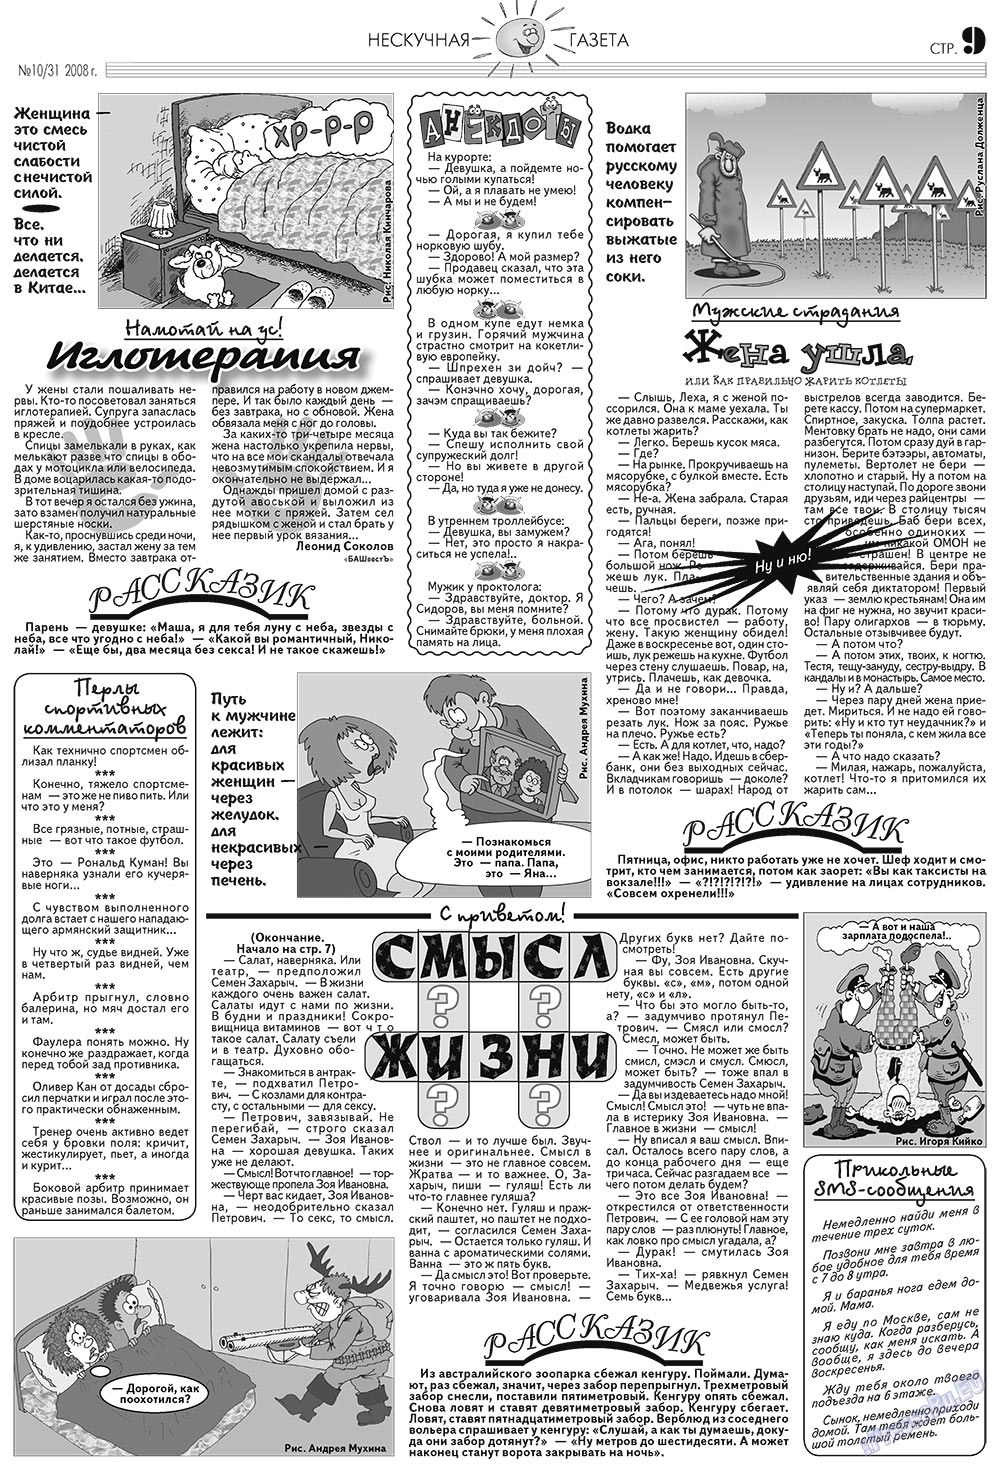 Нескучная газета (журнал). 2008 год, номер 10, стр. 9